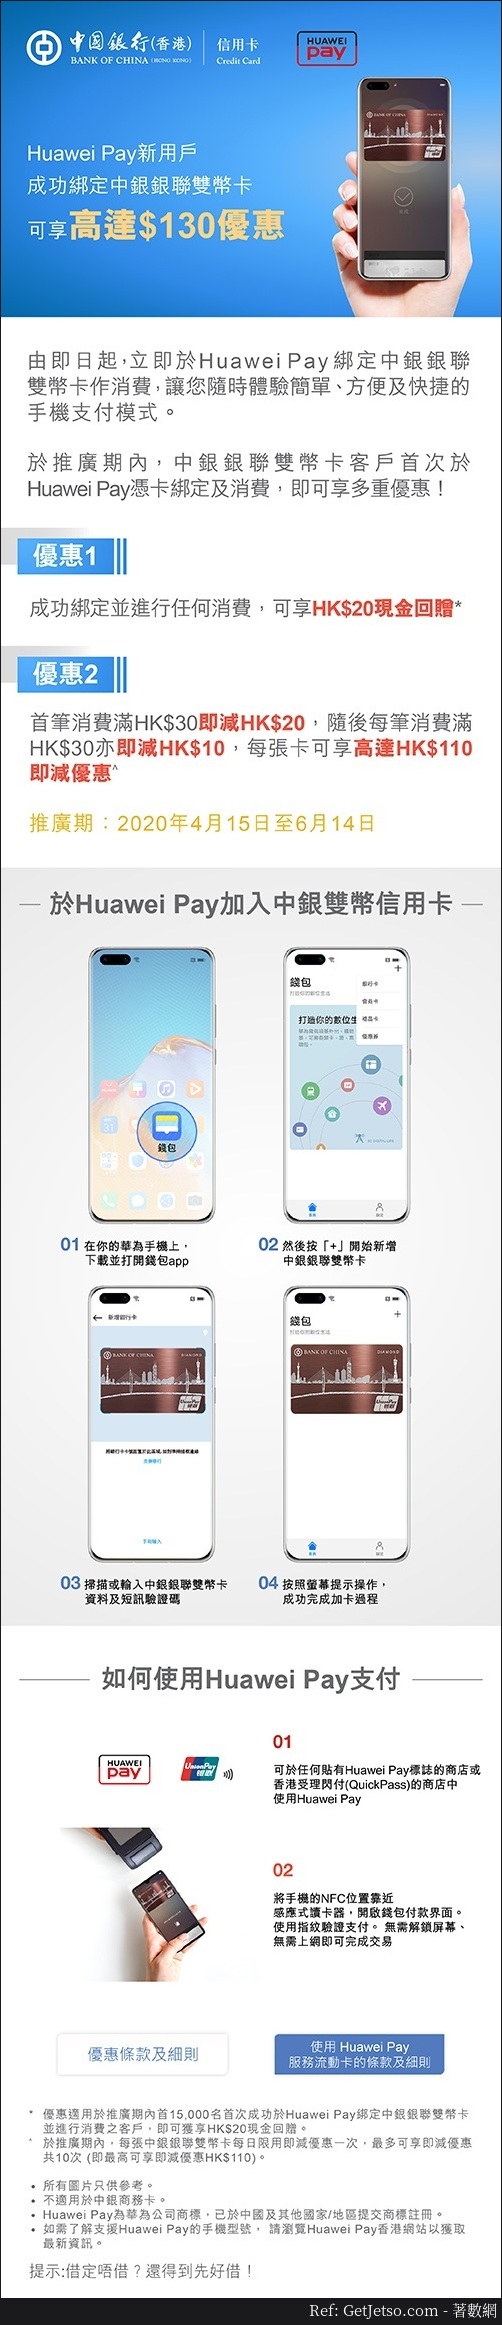 中銀x Huawei Pay 新客戶可享高達HK0優惠(至20年6月14日)圖片1